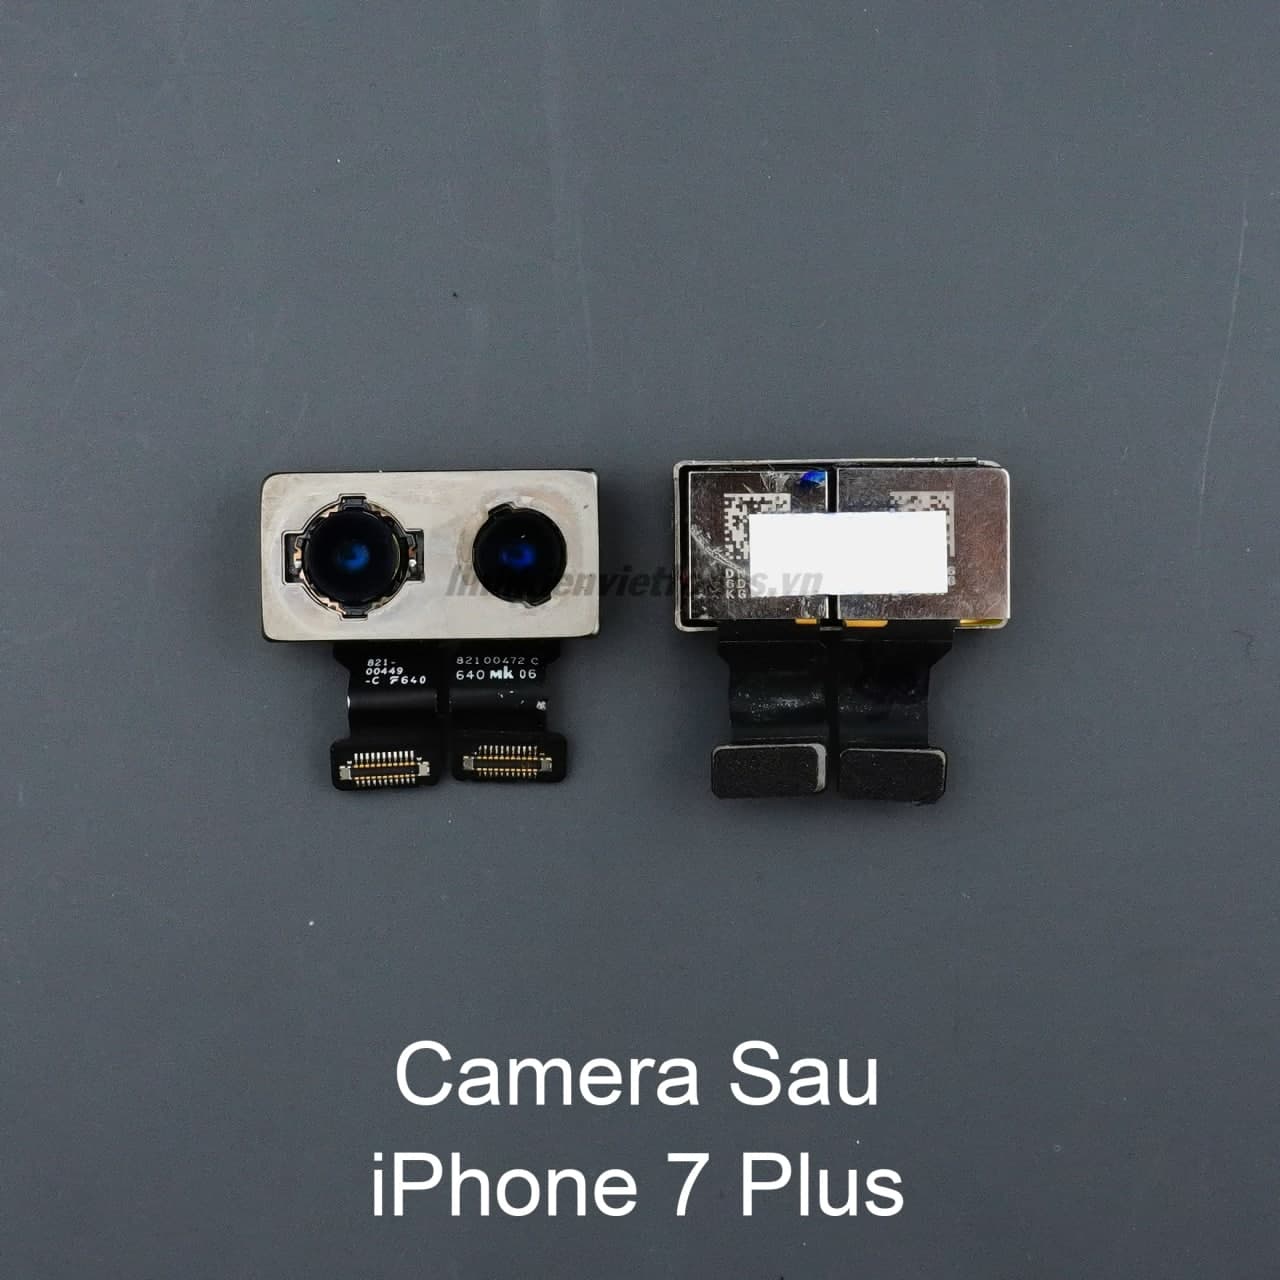 Hướng dẫn chụp ảnh xóa phông trên iPhone 6, 6S cực đơn giản - Công nghệ mới  nhất - Đánh giá - Tư vấn thiết bị di động